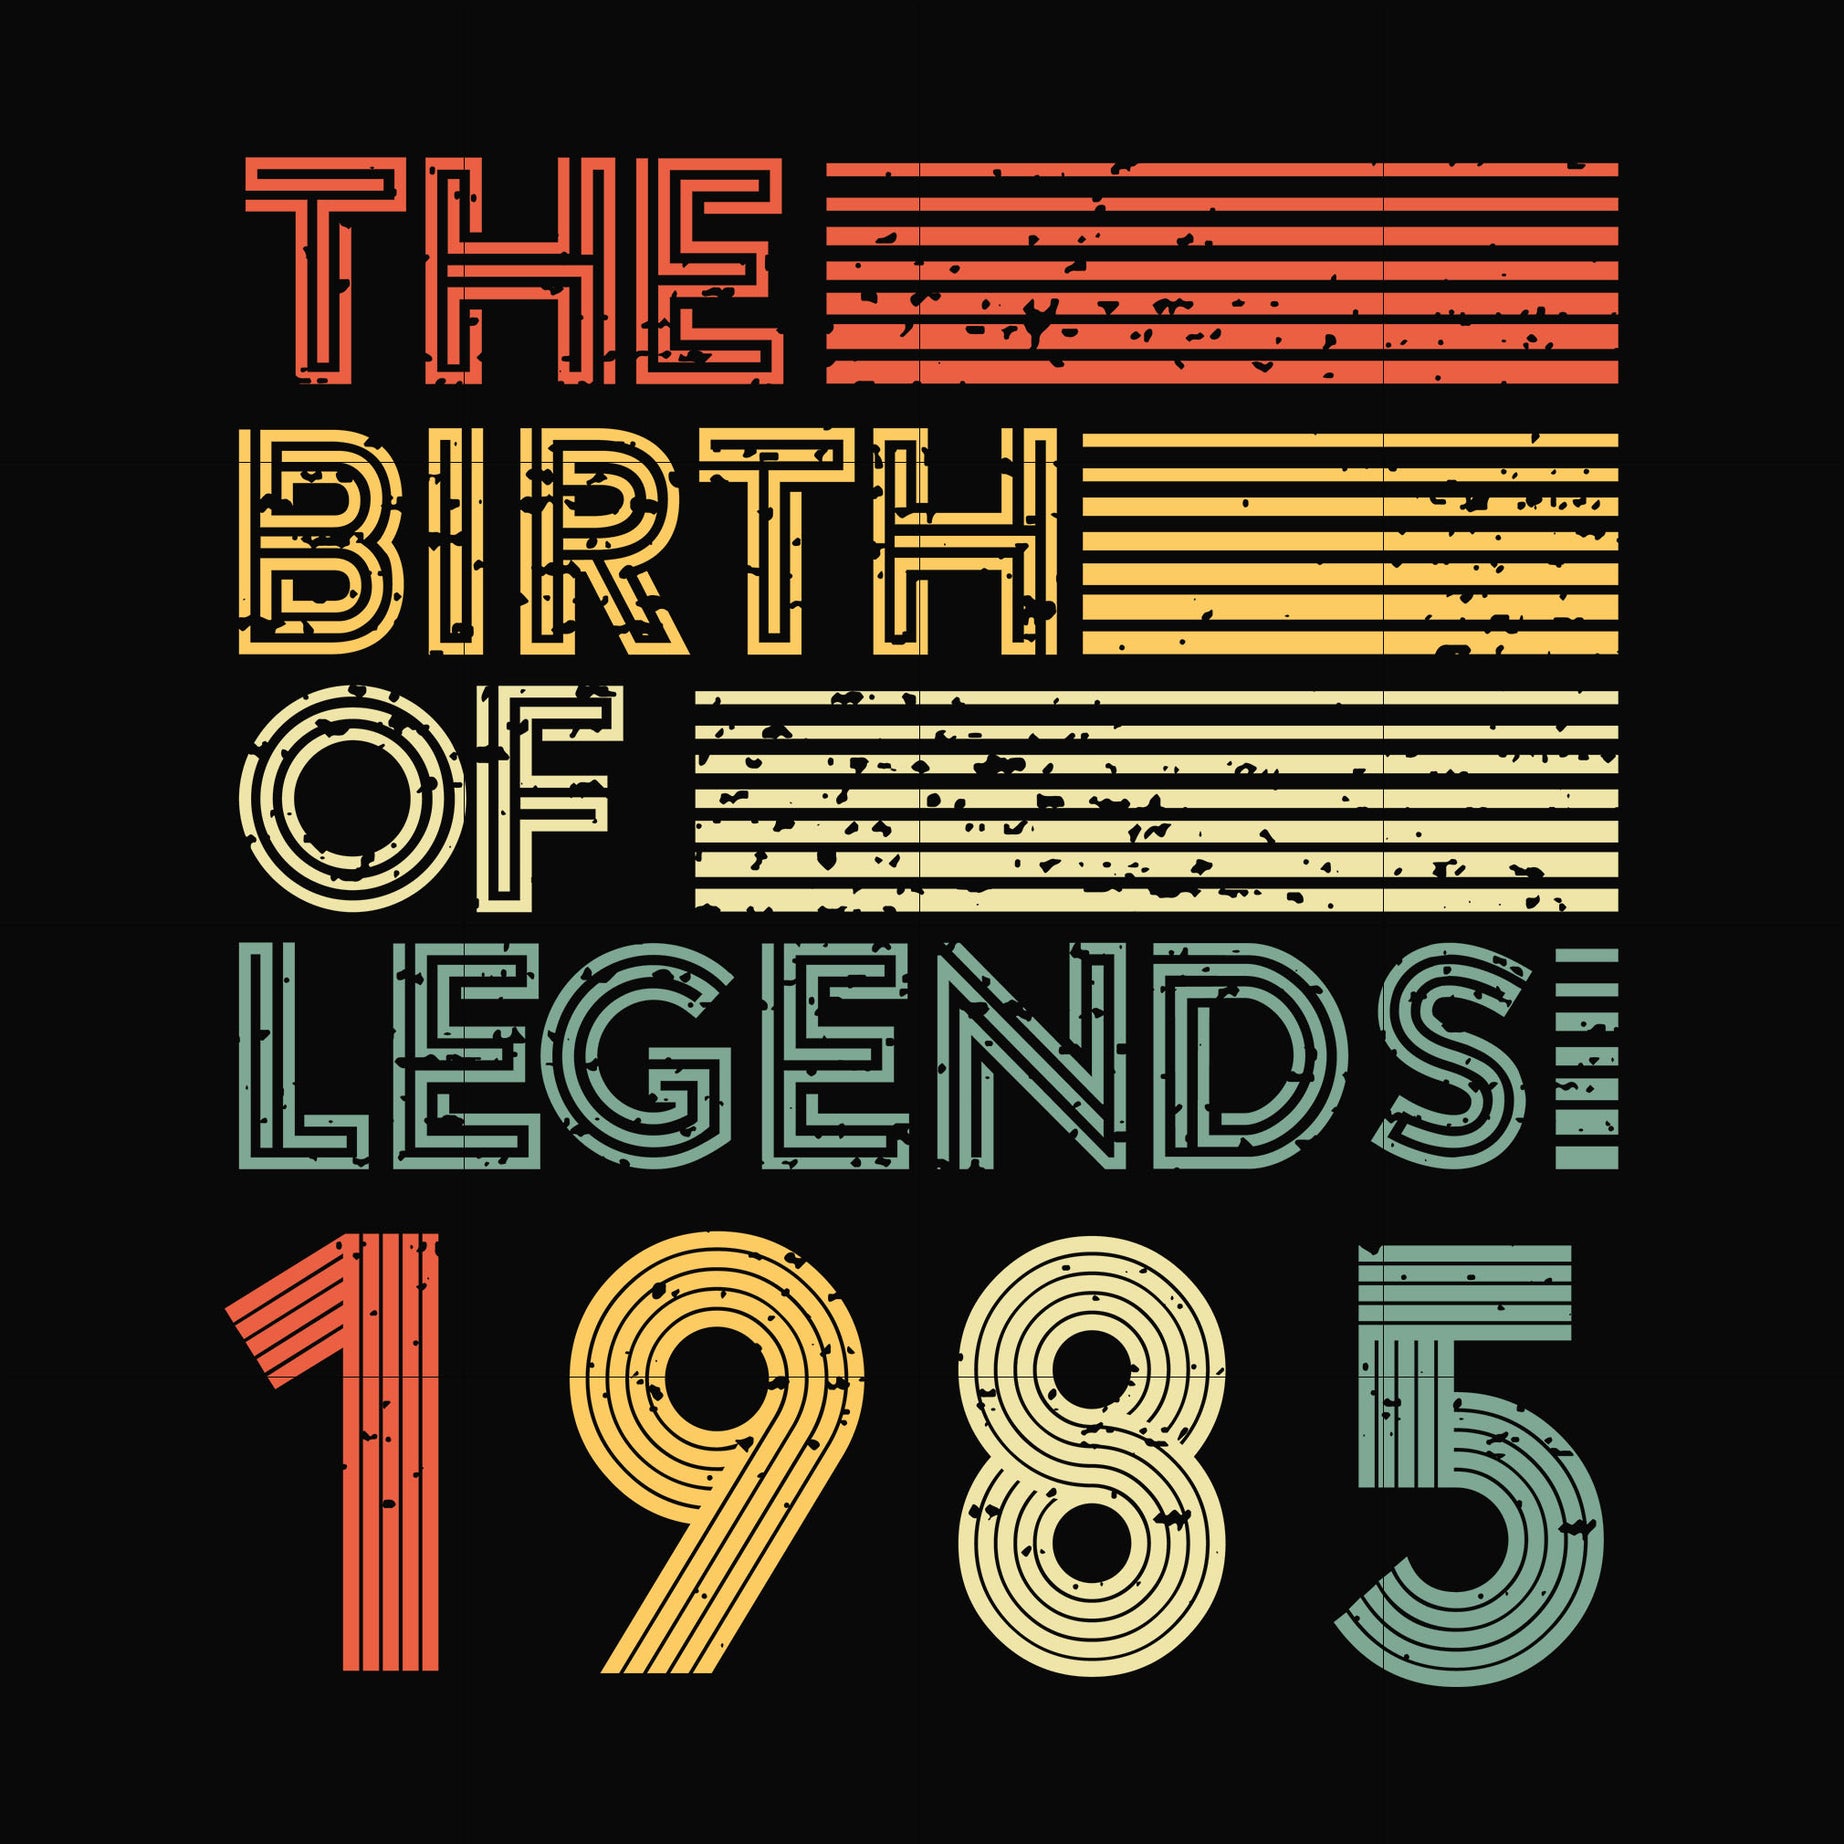 The birth of legends 1985 svg, png, dxf, eps digital file NBD0087